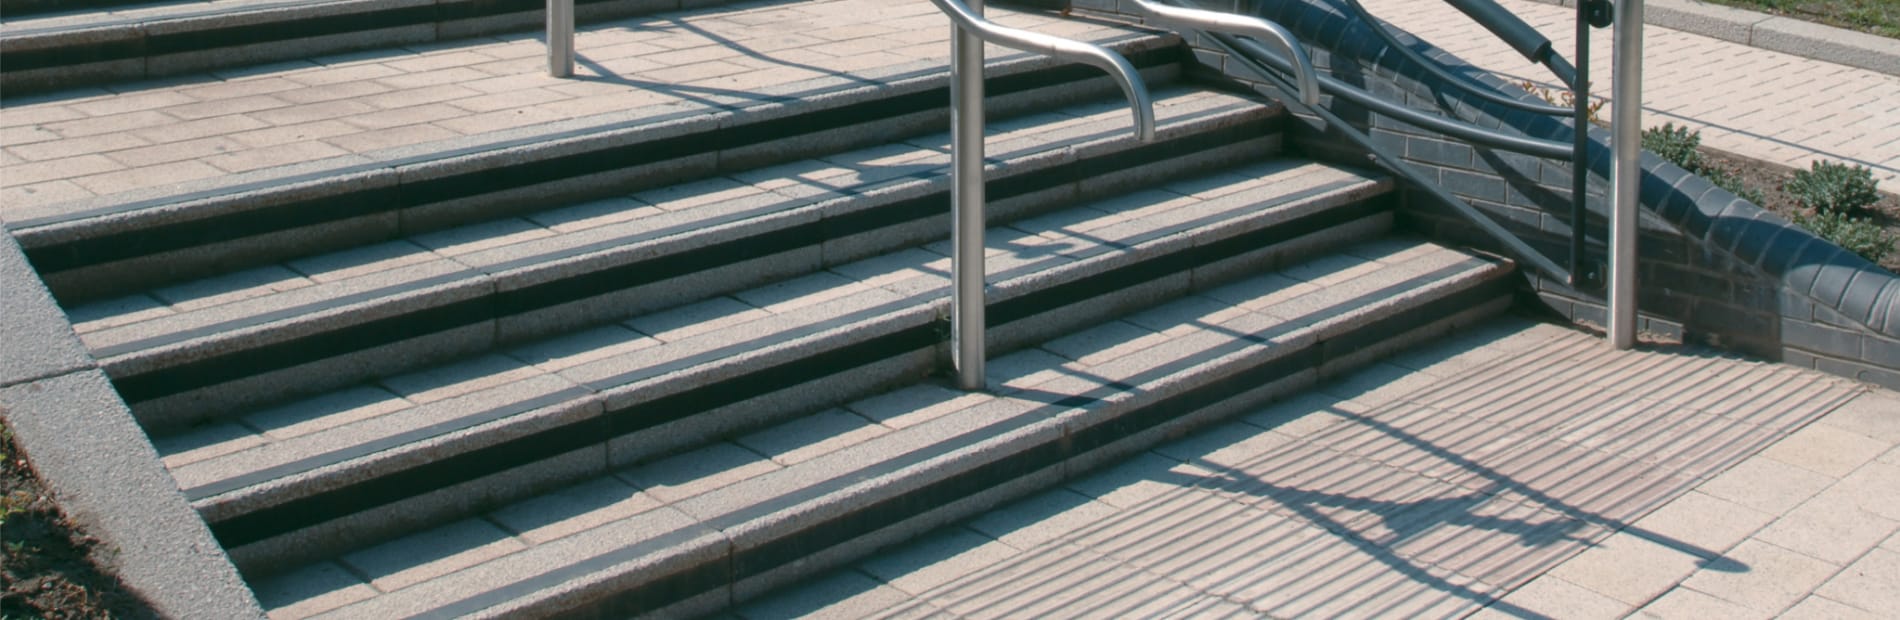 concrete kerb step unit